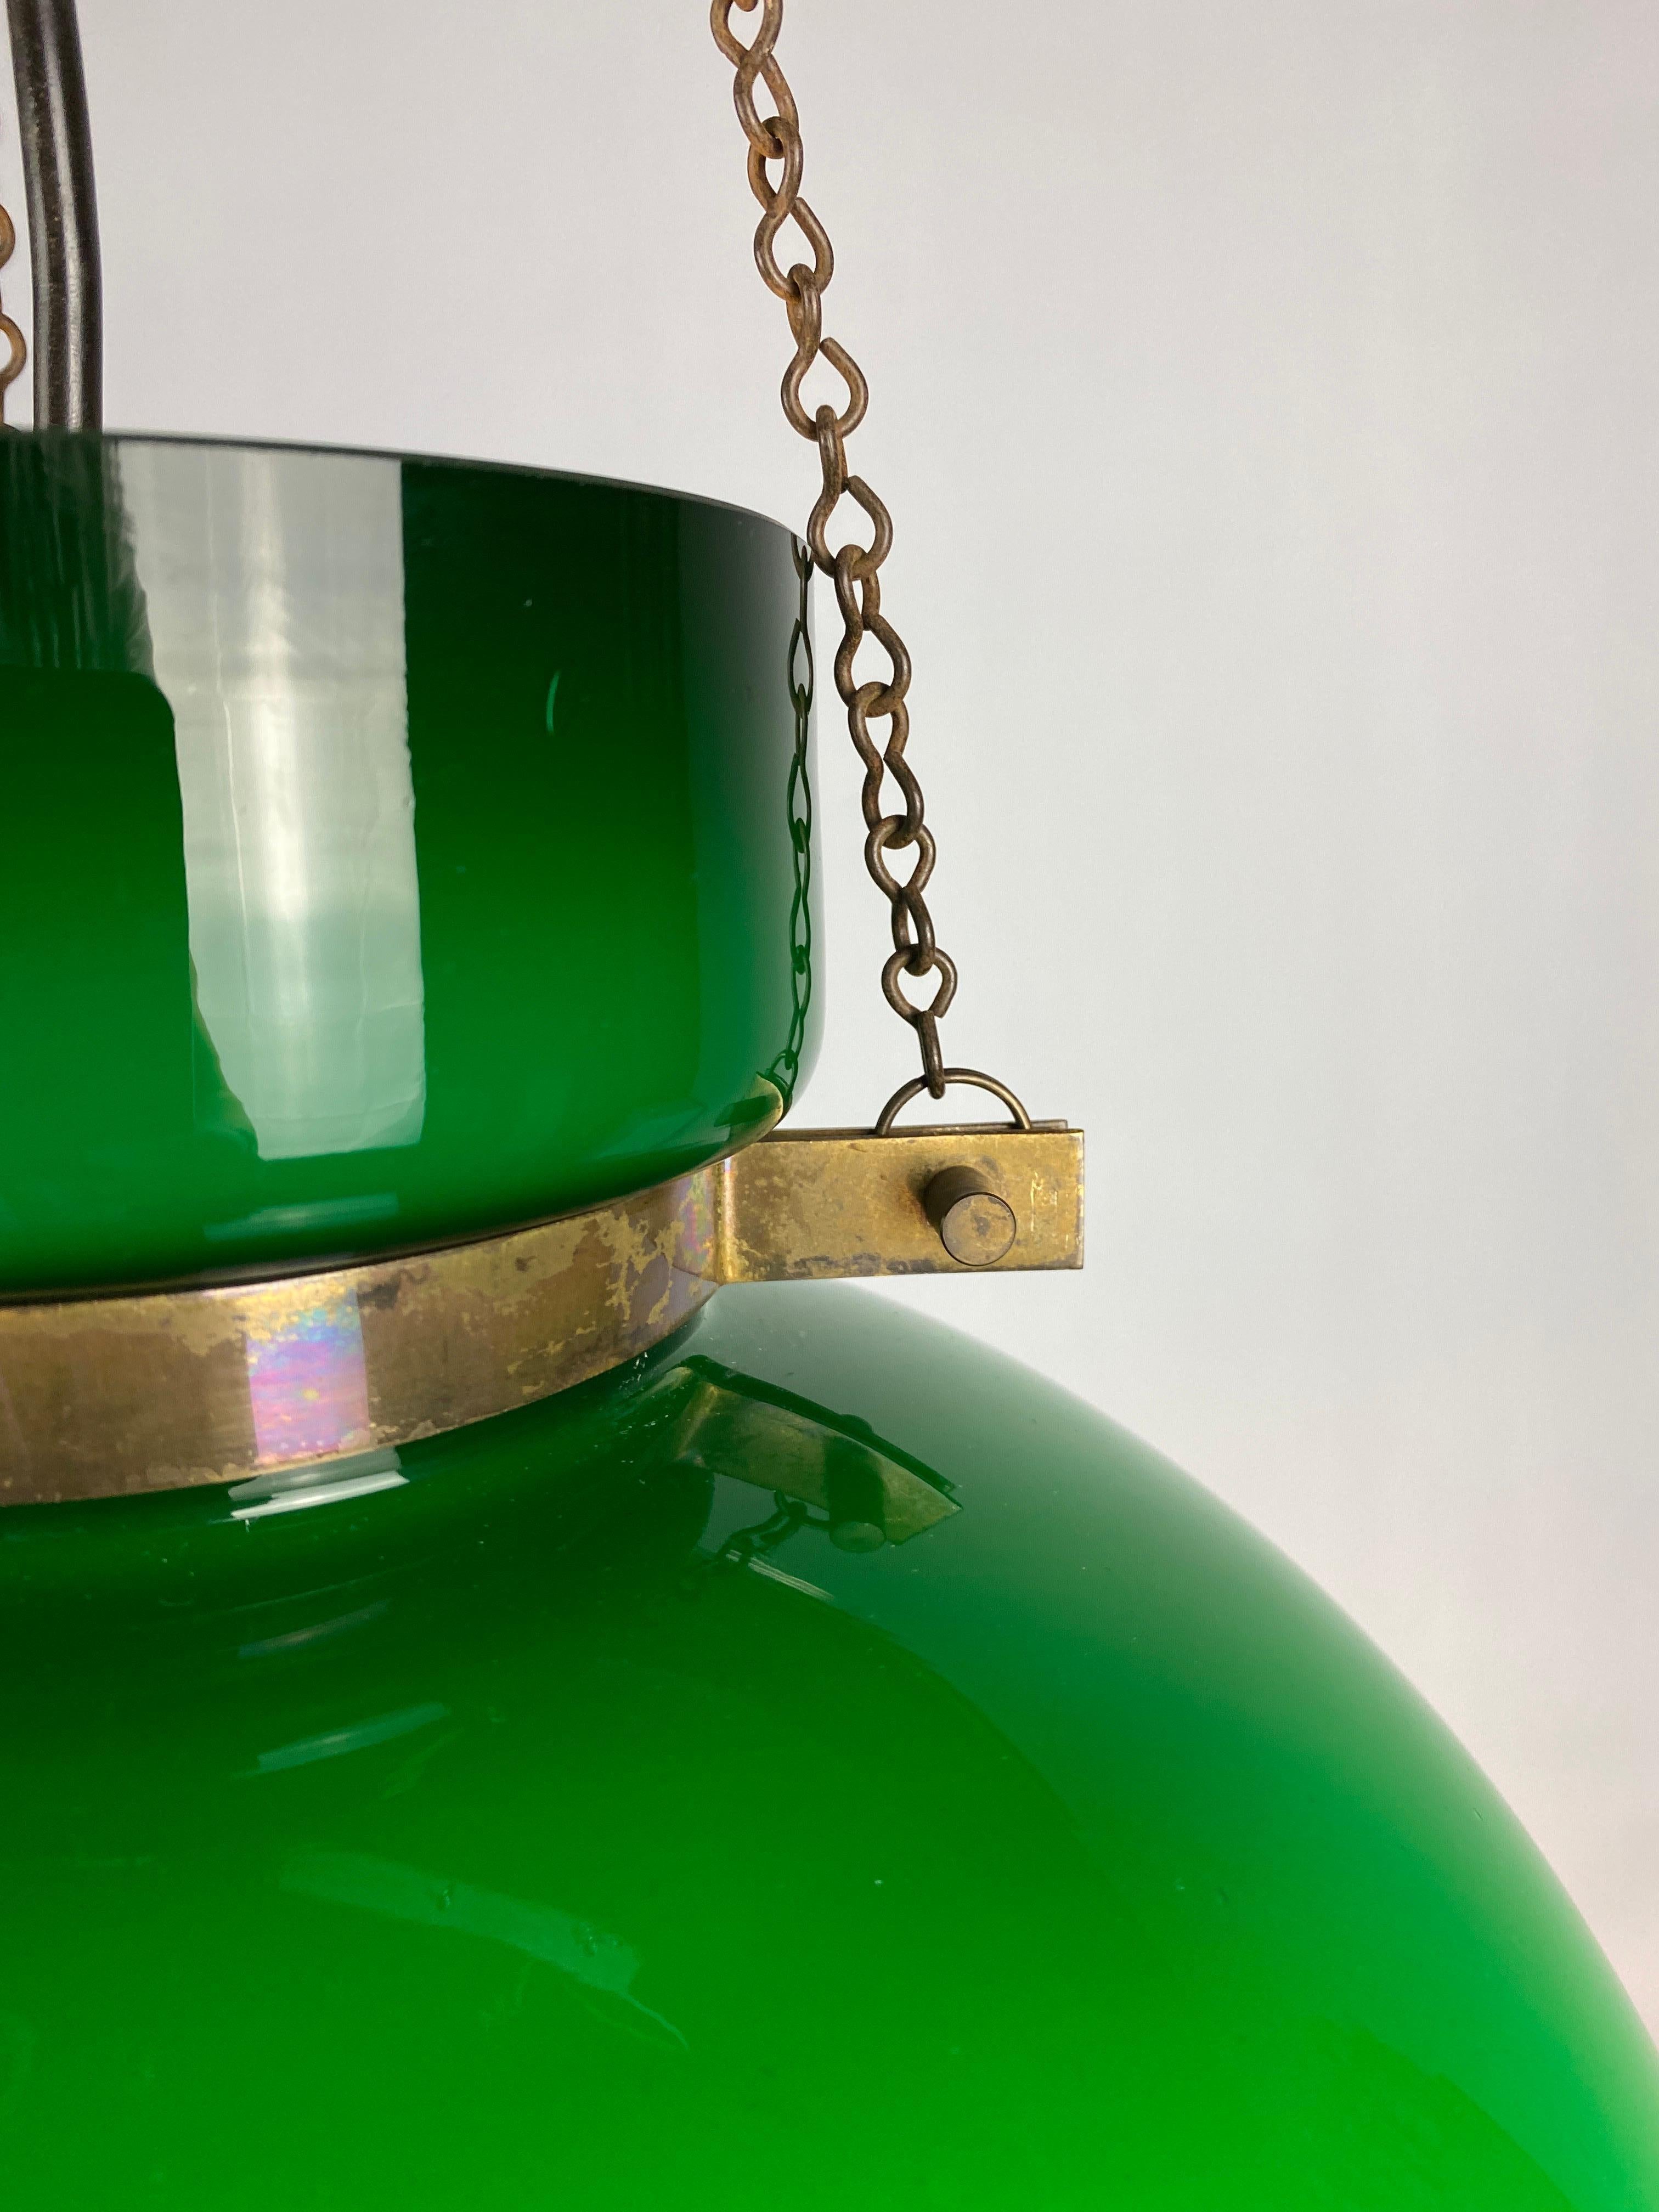 Large Green Glass Pendant Light by Herbert Proft for Glashütte Limburg 1970 For Sale 5